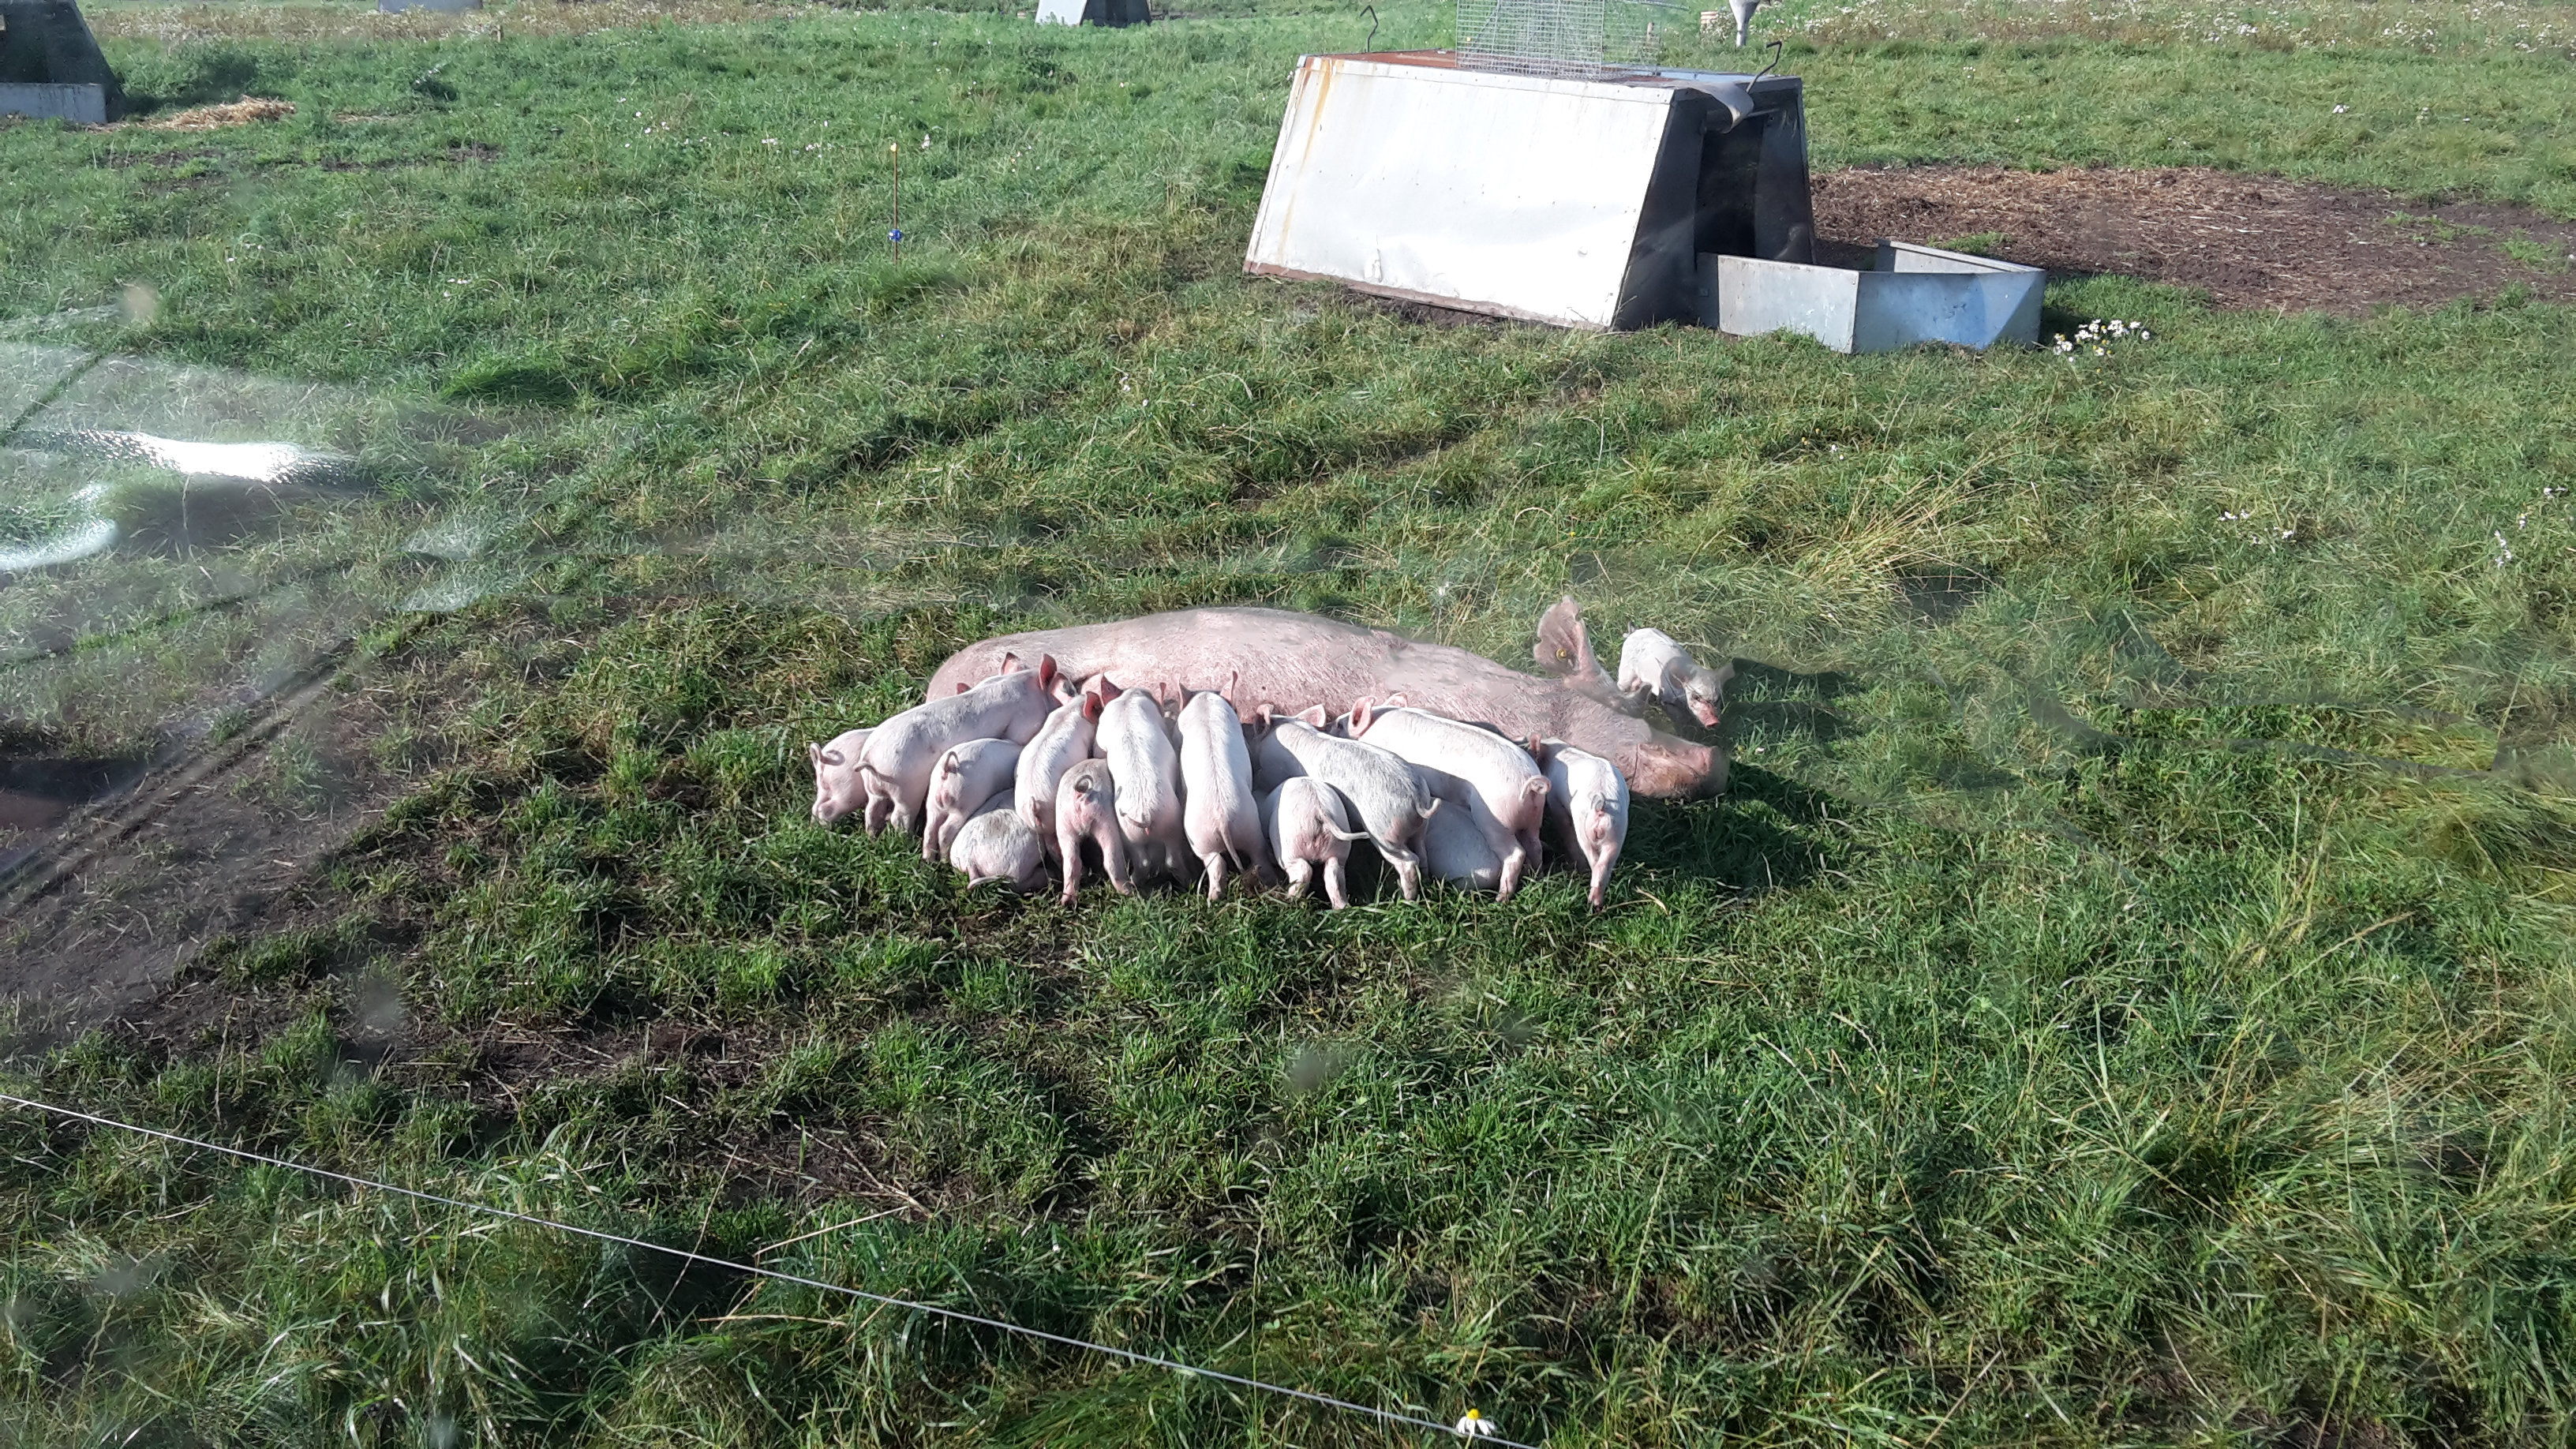 Økologiske grise